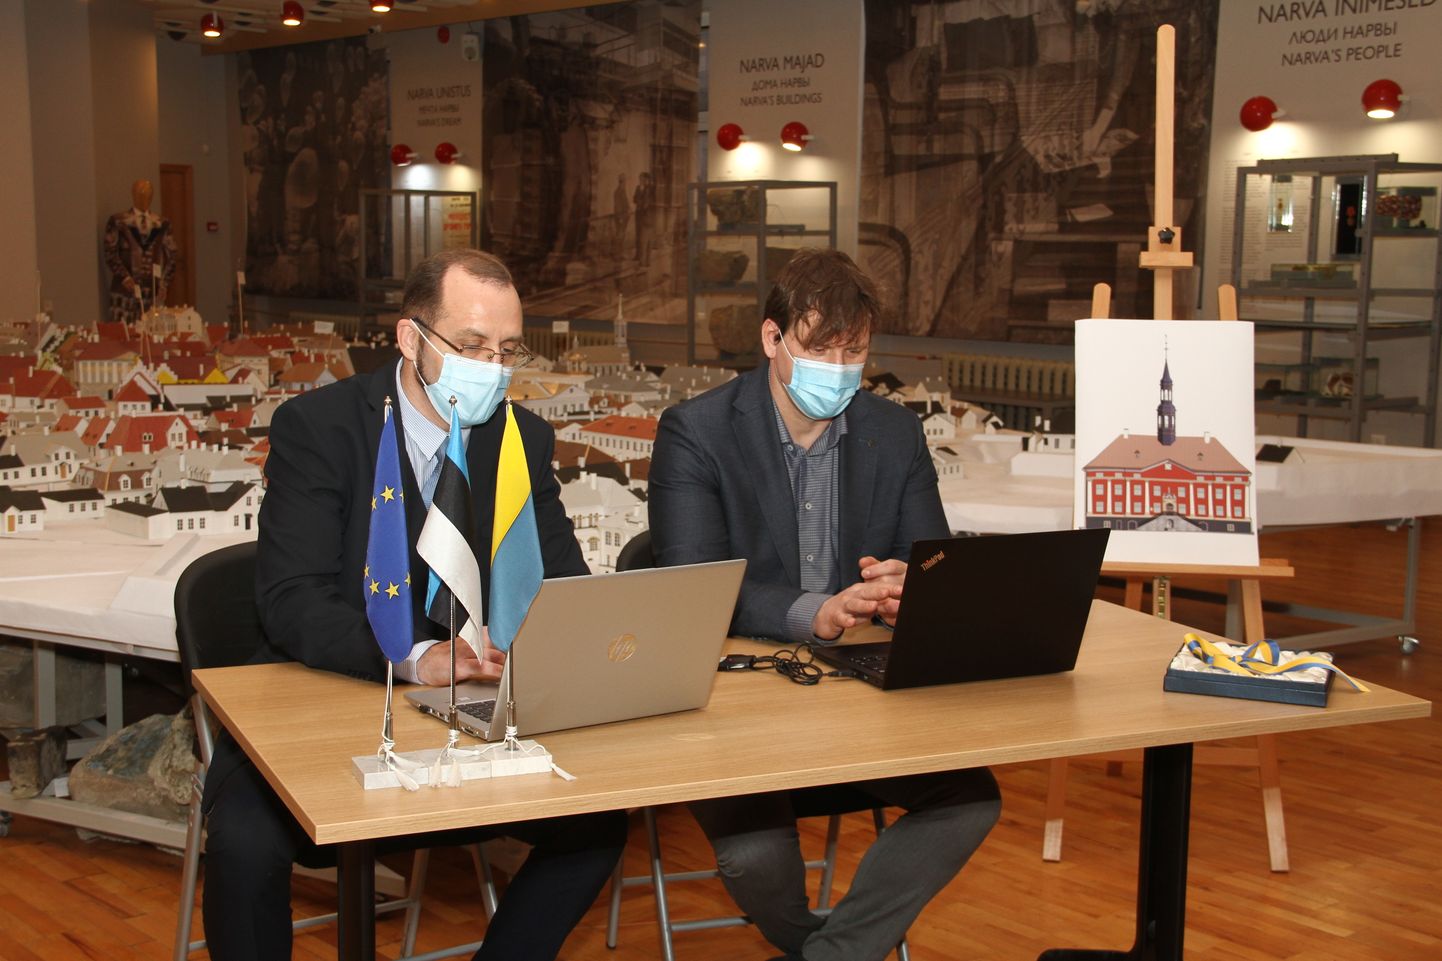 Юрий Сайя и Кайдо Сомелар подписывают договор о реконструкции нарвской ратуши.